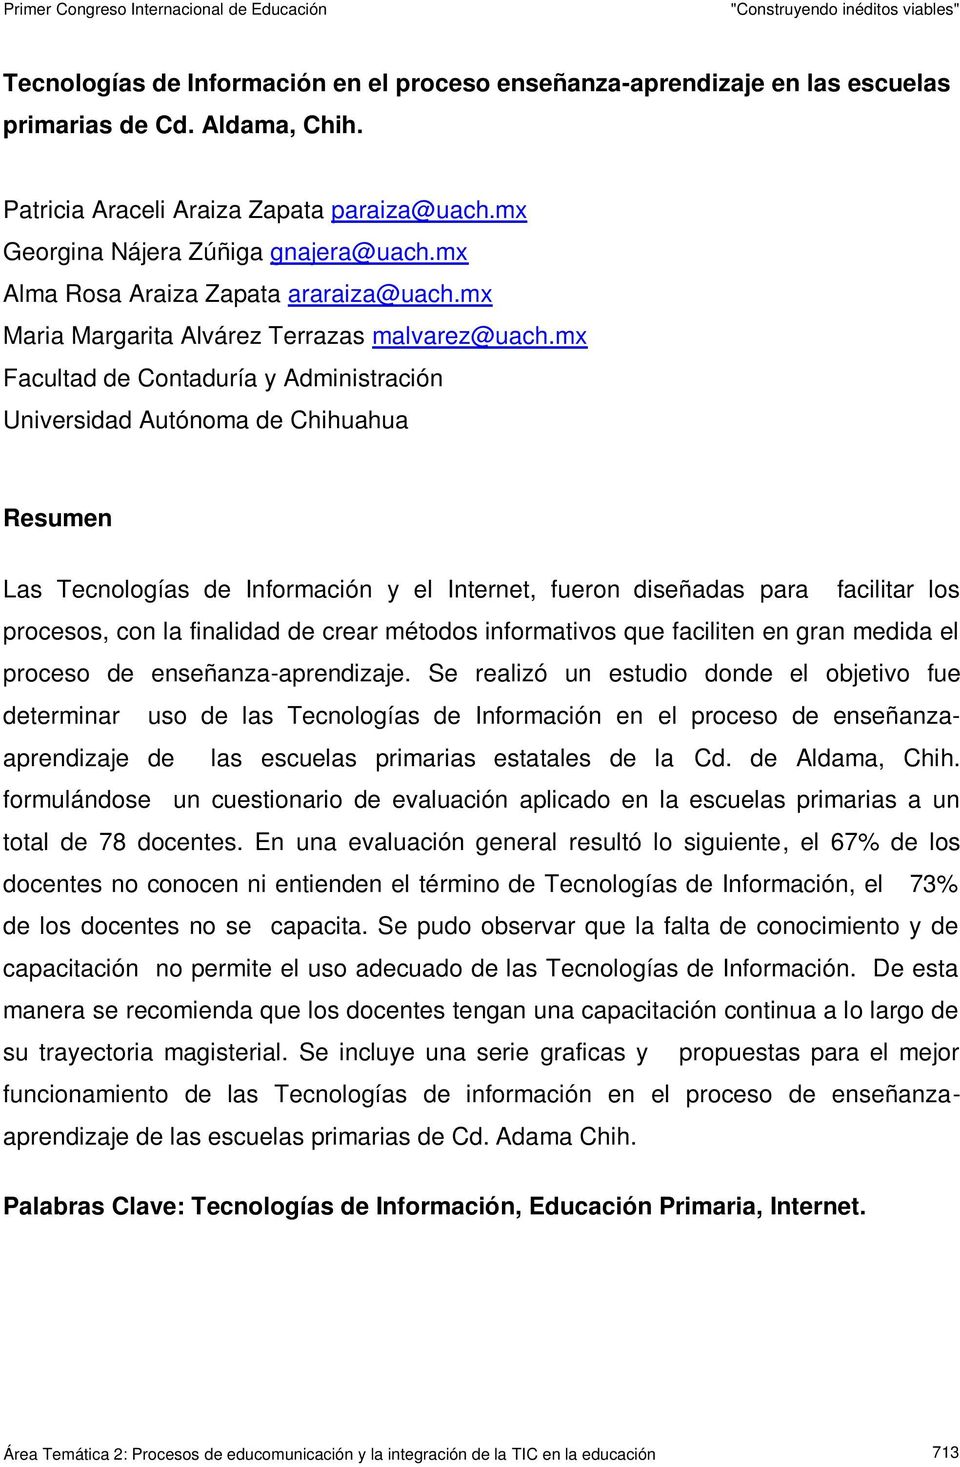 mx Facultad de Contaduría y Administración Universidad Autónoma de Chihuahua Resumen Las Tecnologías de Información y el Internet, fueron diseñadas para facilitar los procesos, con la finalidad de